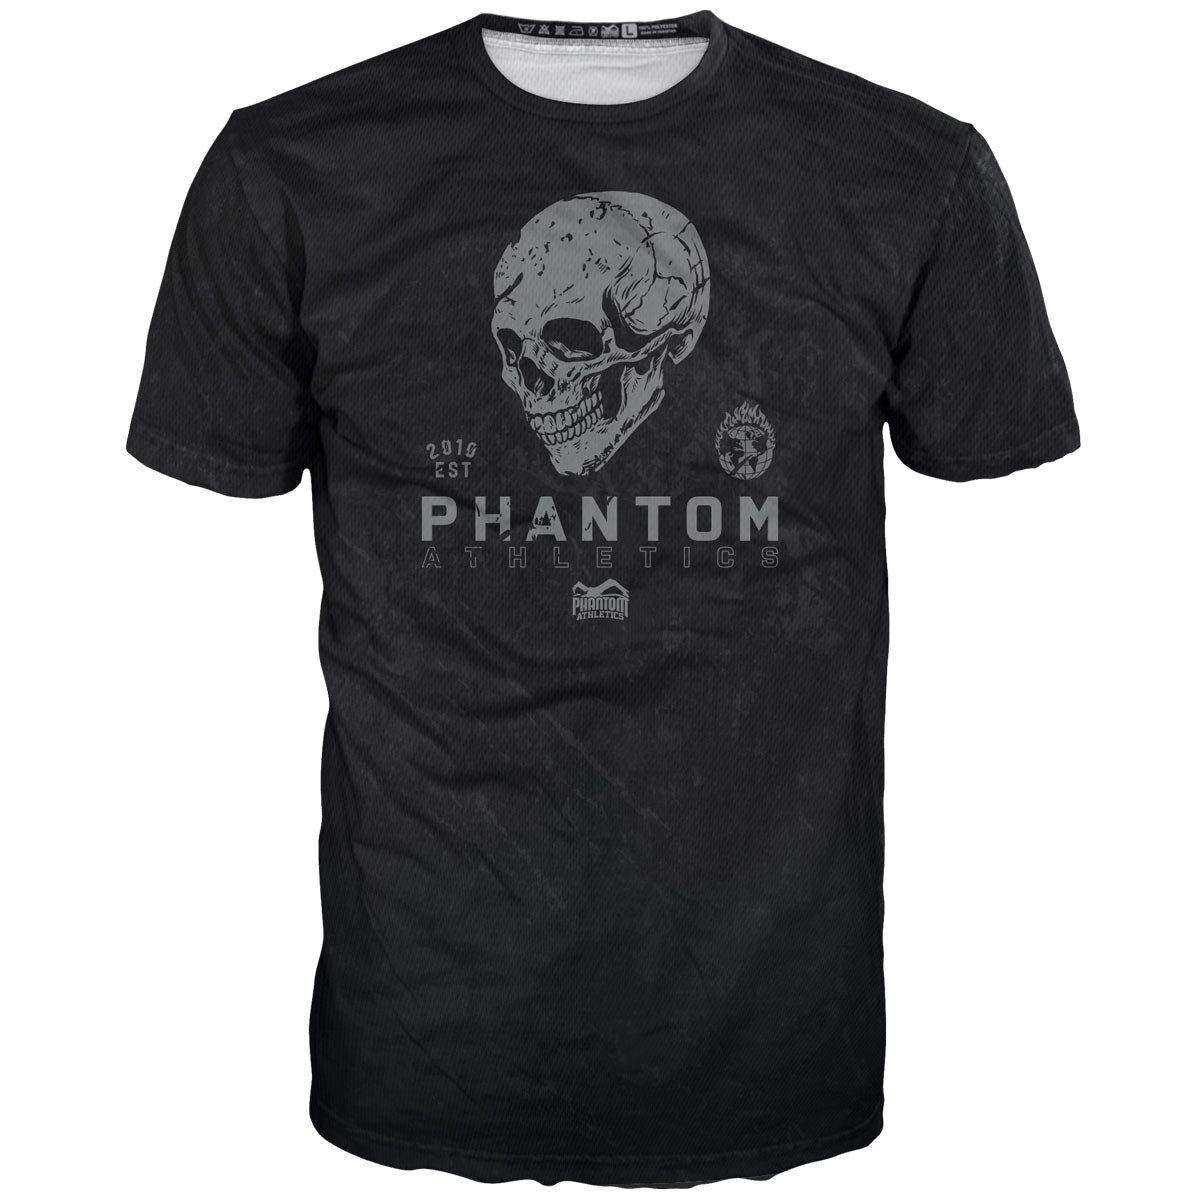 Phantom FIGHT риза в дизайн на череп с череп. Идеален за вашето обучение по бойни изкуства. 